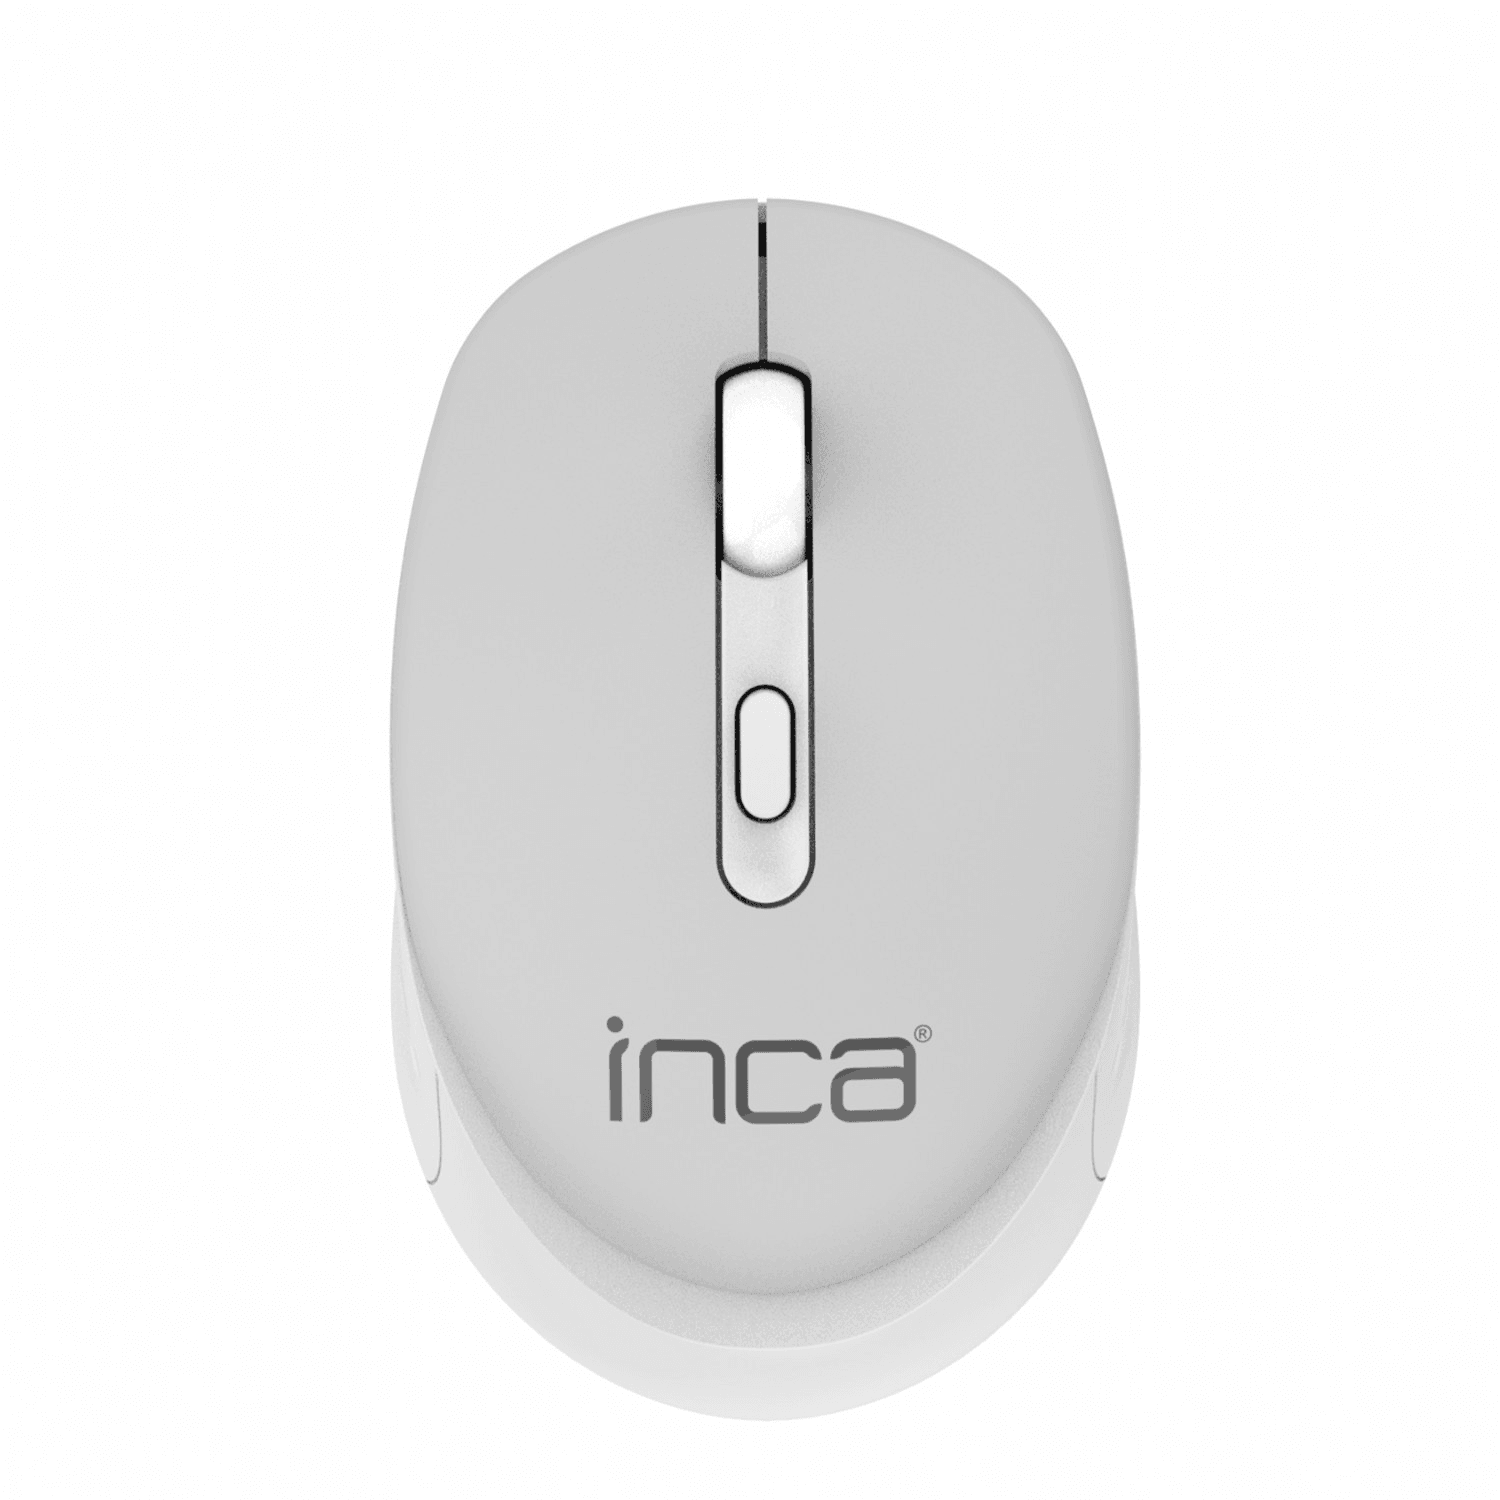 INCA IWM-243RG Candy Design Wireless Mouse, 2.4GHz Wireless, Auto Sleep Mode, 800-1600 DPI (Grau)